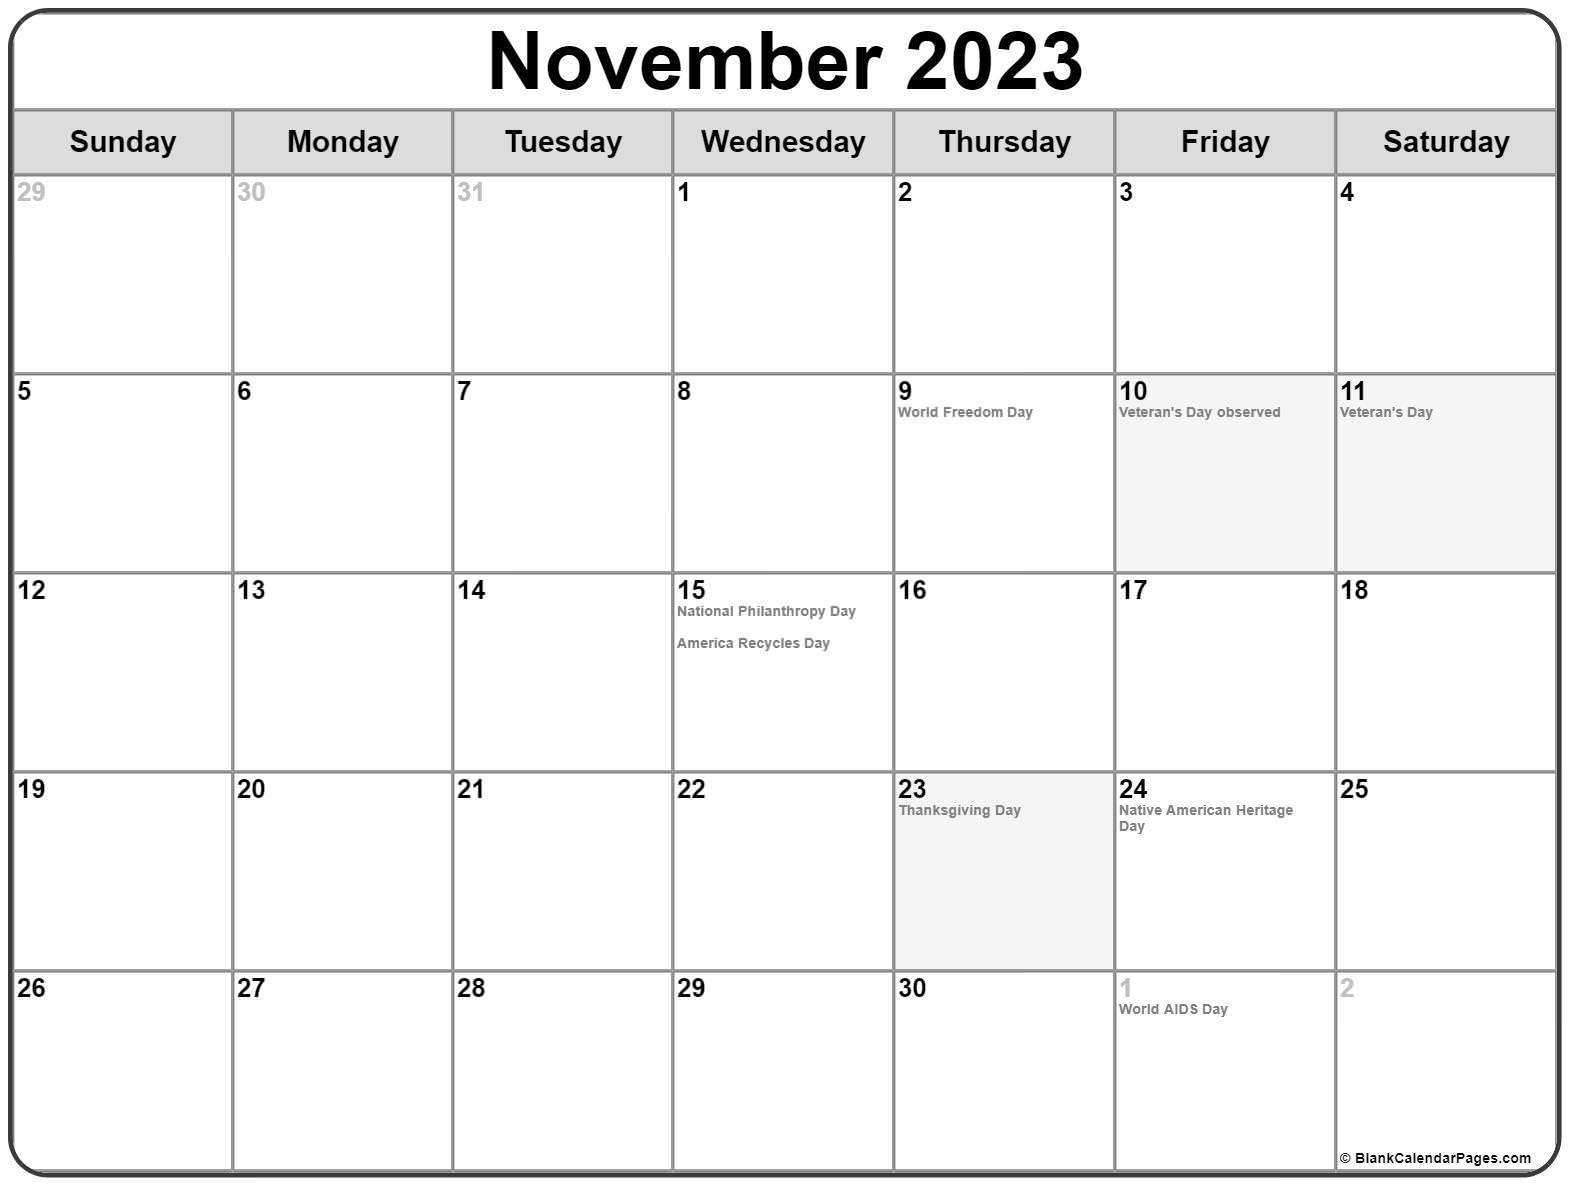 November 2023 Calendar Usa Get Calender 2023 Update